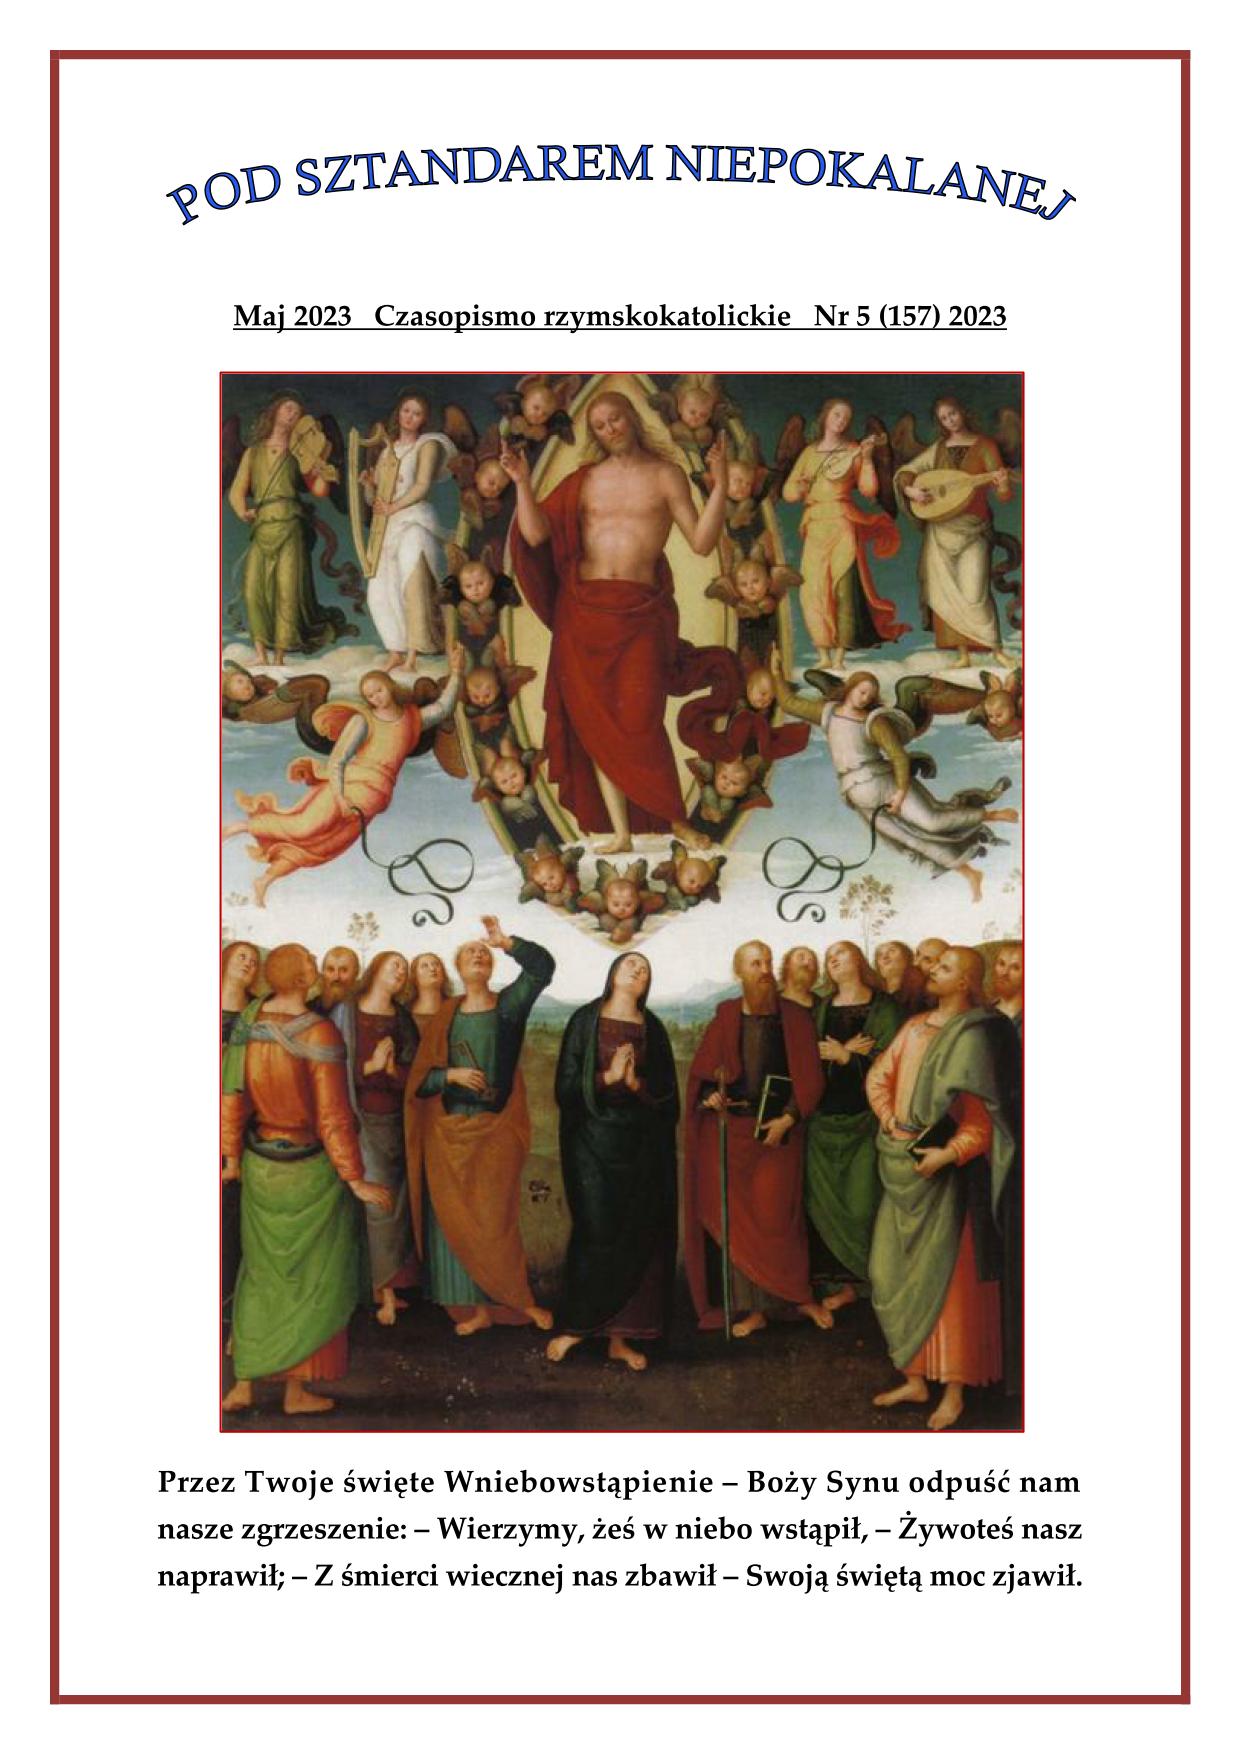 "Pod sztandarem Niepokalanej". Nr 157. Maj 2023. Czasopismo rzymskokatolickie.